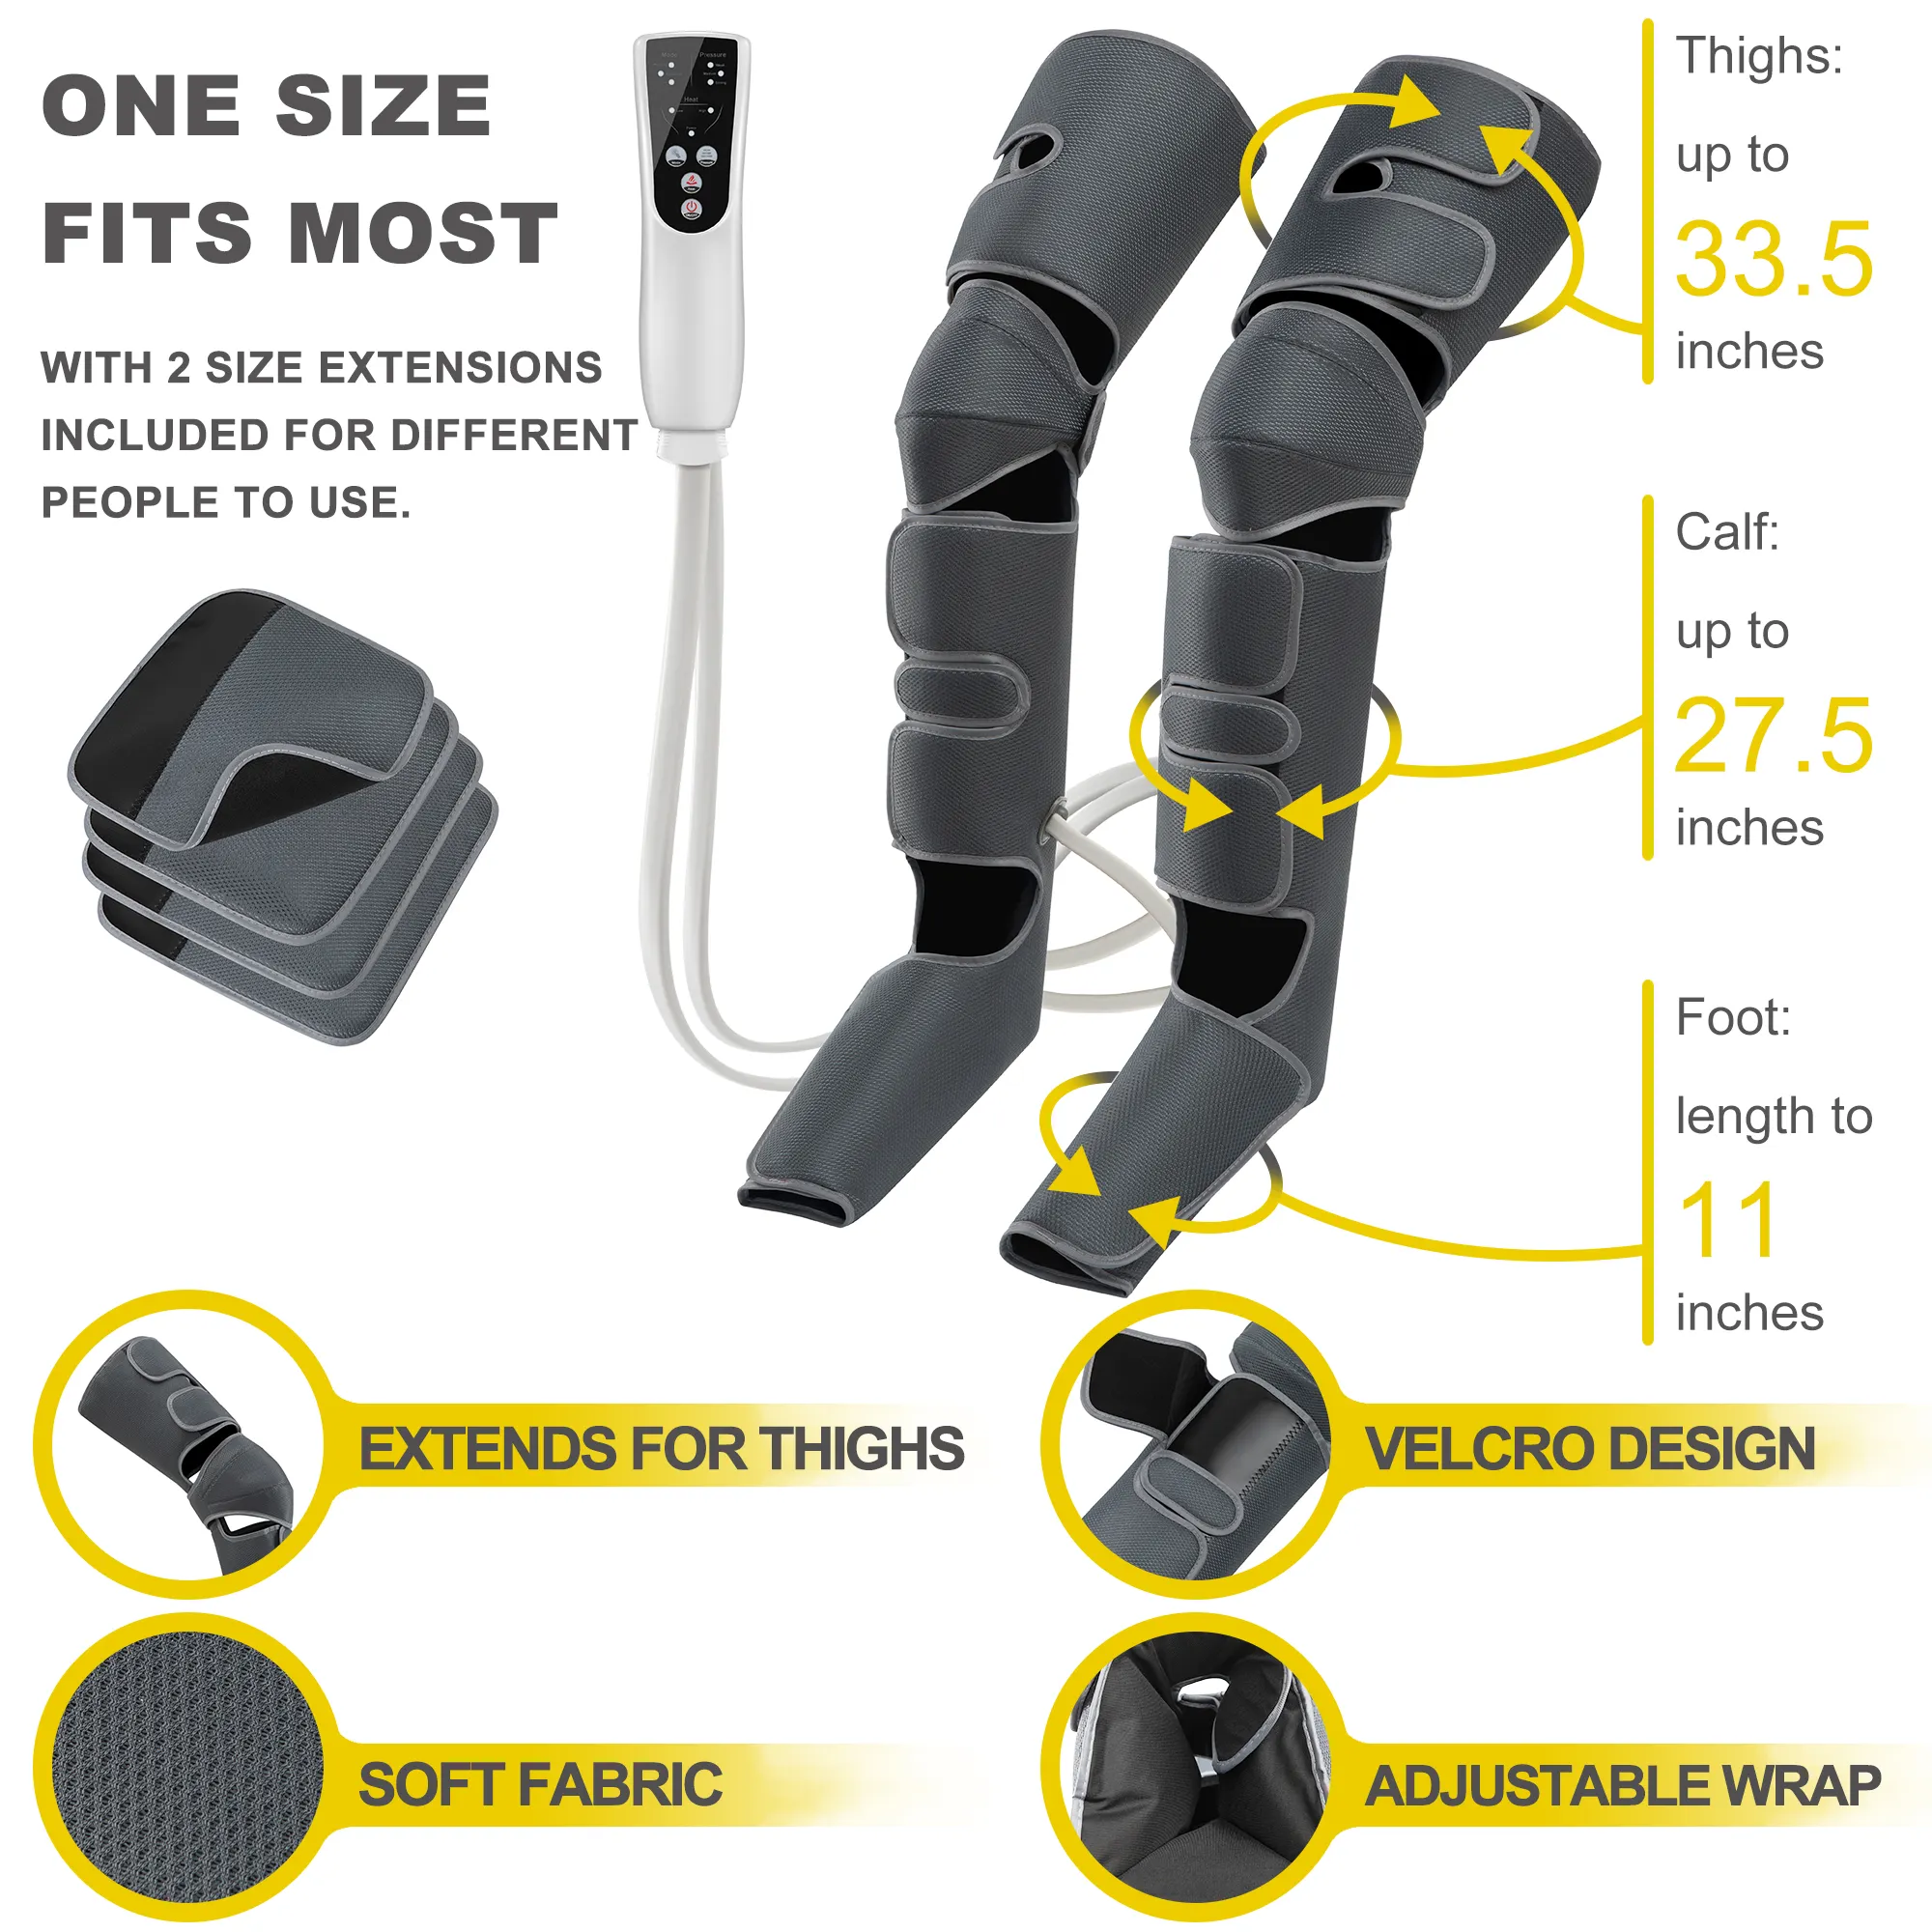 LY-670D masajeador eléctrico de piernas, compresión de aire, 3 intensidades, 3 modos, envolturas para circulación con calor